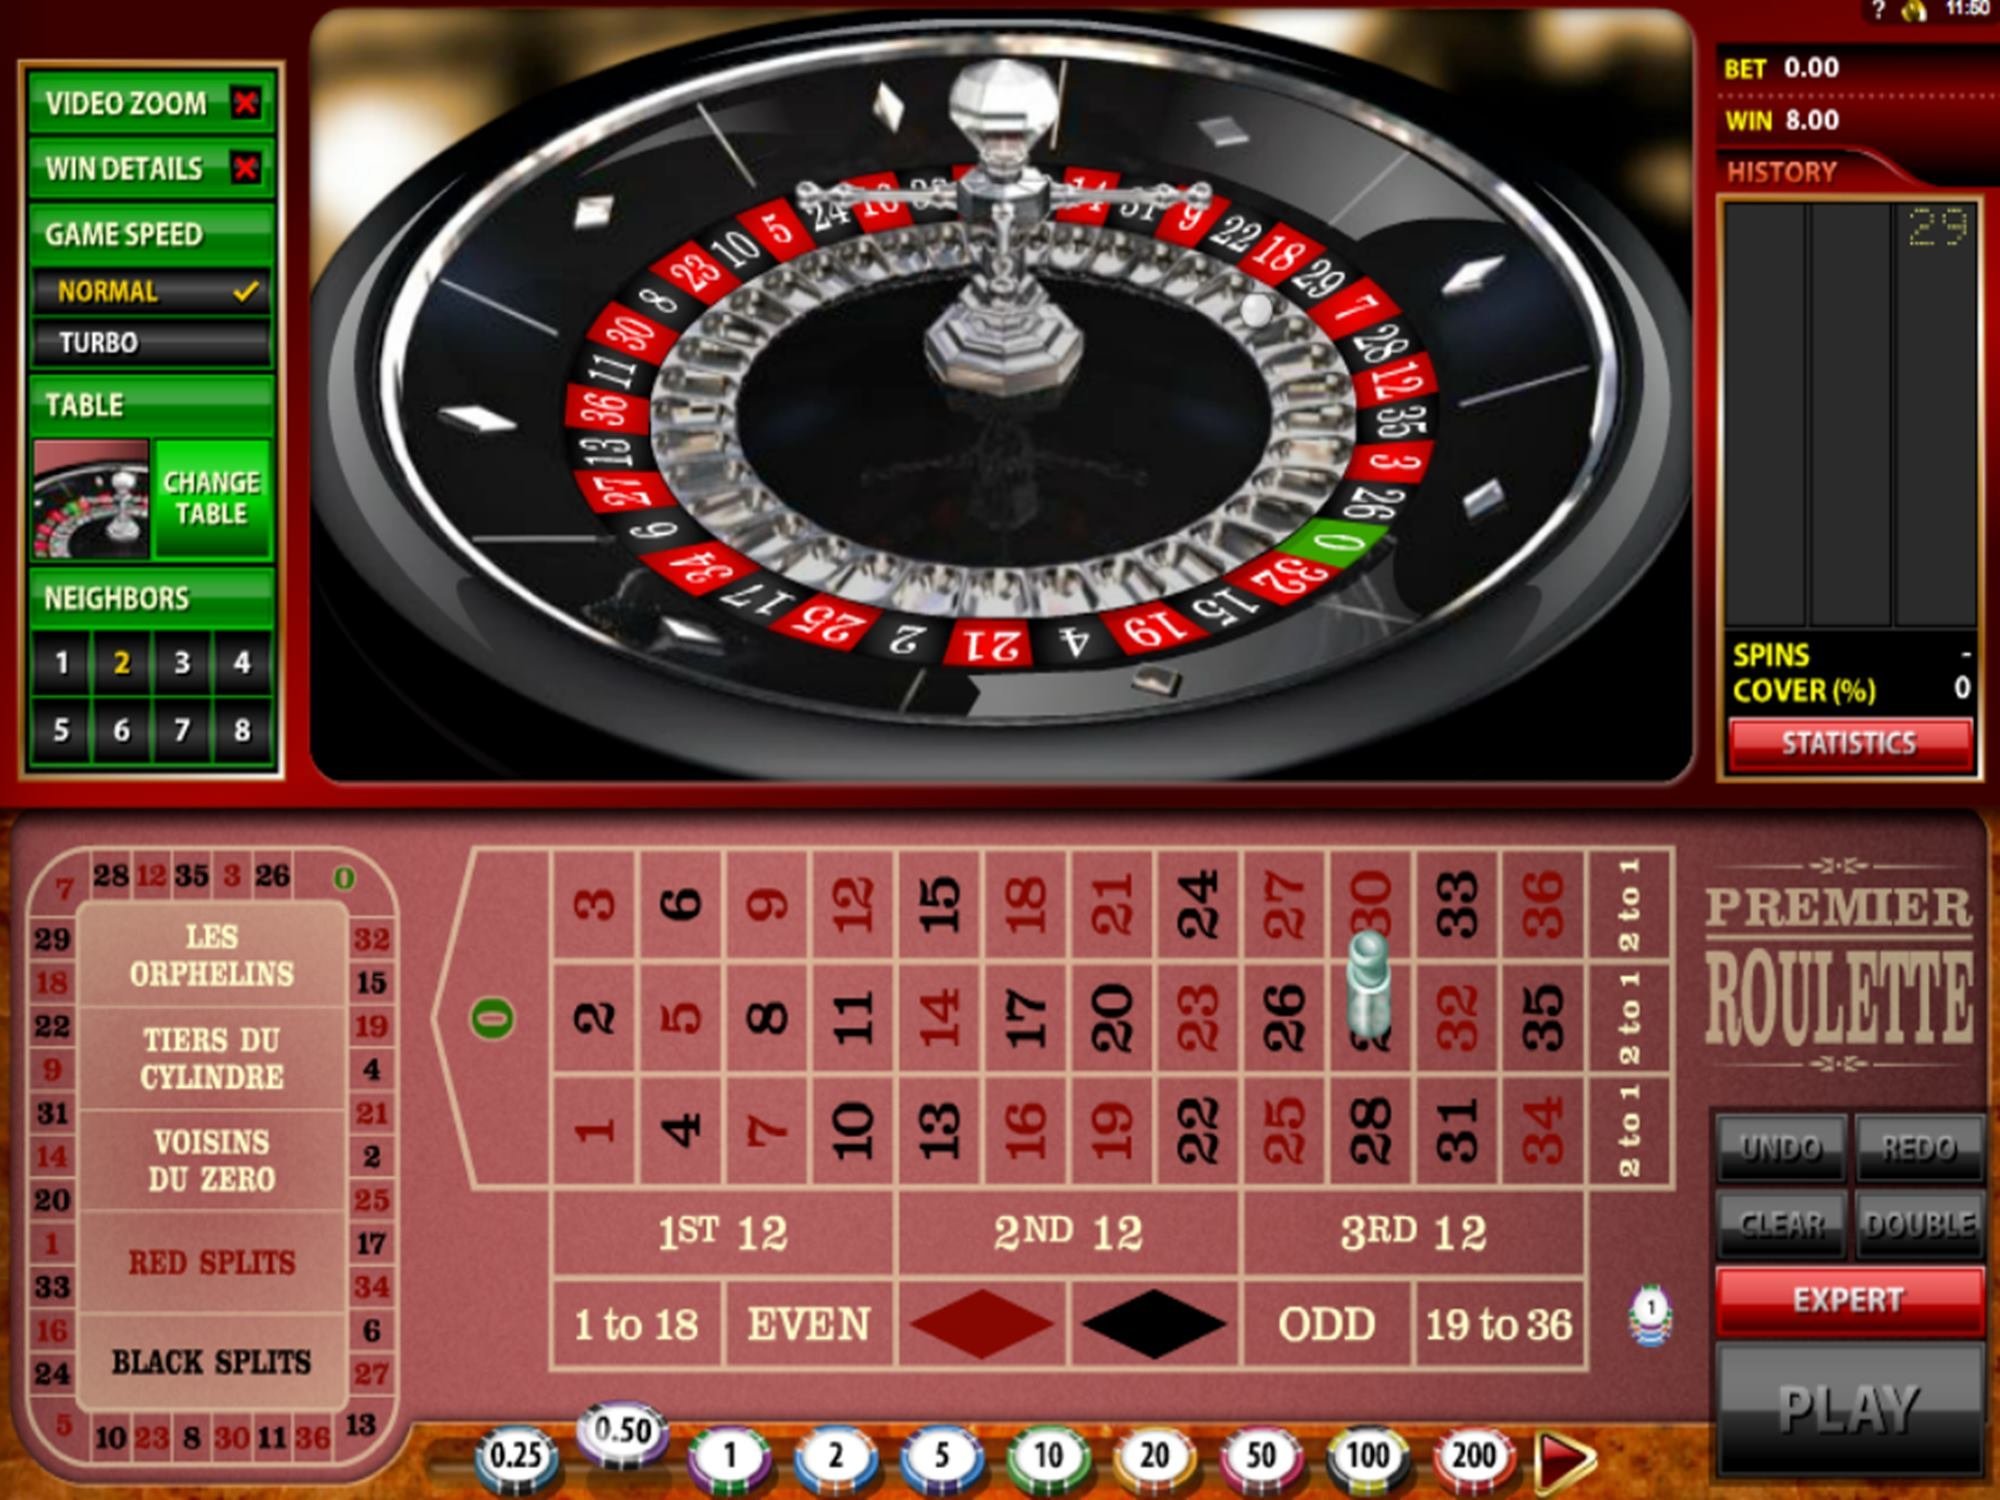 Термины употребляемые в казино играть в аноним казино